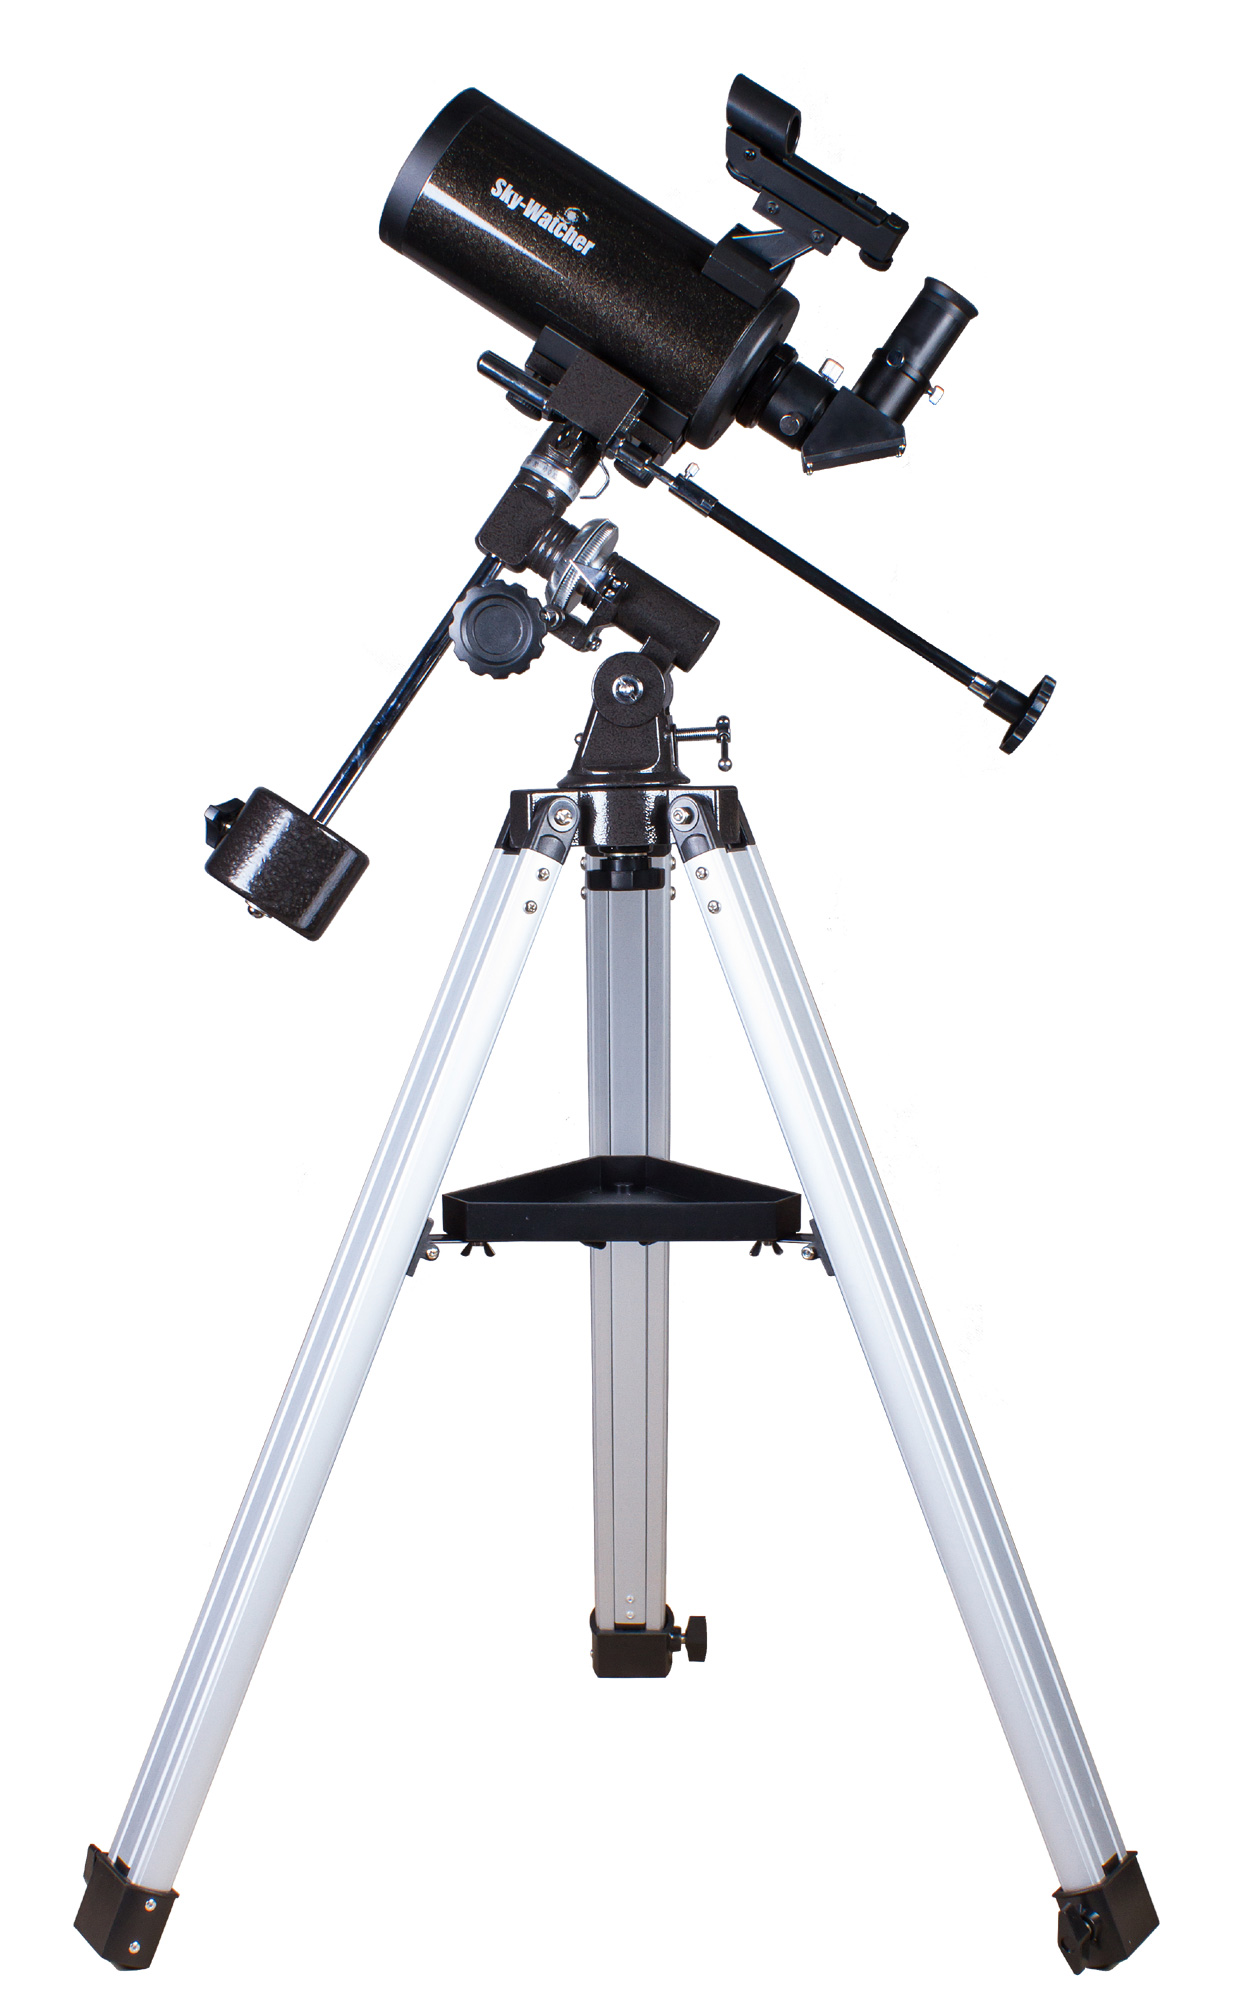 <p>Компактный зеркально-линзовый телескоп Sky-Watcher BK MAK90EQ1 – это идеальный инструмент для астрономических наблюдений в городе и на природе. Прекрасная оптика, надежная механика и высокое качество сборки делают эту модель оптимальным выбором для пользователей разного уровня подготовки.</p><p><strong>Оптика</strong></p><p>Оптическая труба собрана по катадиоптрической схеме Максутова-Кассегрена. При объективе диаметром 90 мм труба отличается весьма компактными размерами, поэтому ее удобно брать с собой для загородных наблюдений. Эта модель комплектуется двумя окулярами. Начинать наблюдения лучше с окуляра с фокусным расстоянием 20 мм. Он имеет более широкое поле зрения и позволяет охватить взглядом большее пространство. Для более детального изучения небесных тел следует использовать окуляр с фокусным расстоянием 10 мм.</p><p><strong>Монтировка</strong></p><p>Труба устанавливается на экваториальную монтировку. Такая монтировка позволяет компенсировать суточное движение объектов. Алюминиевая тренога позволяет добиться устойчивого положения конструкции, поэтому изображение получается стабильным.</p>